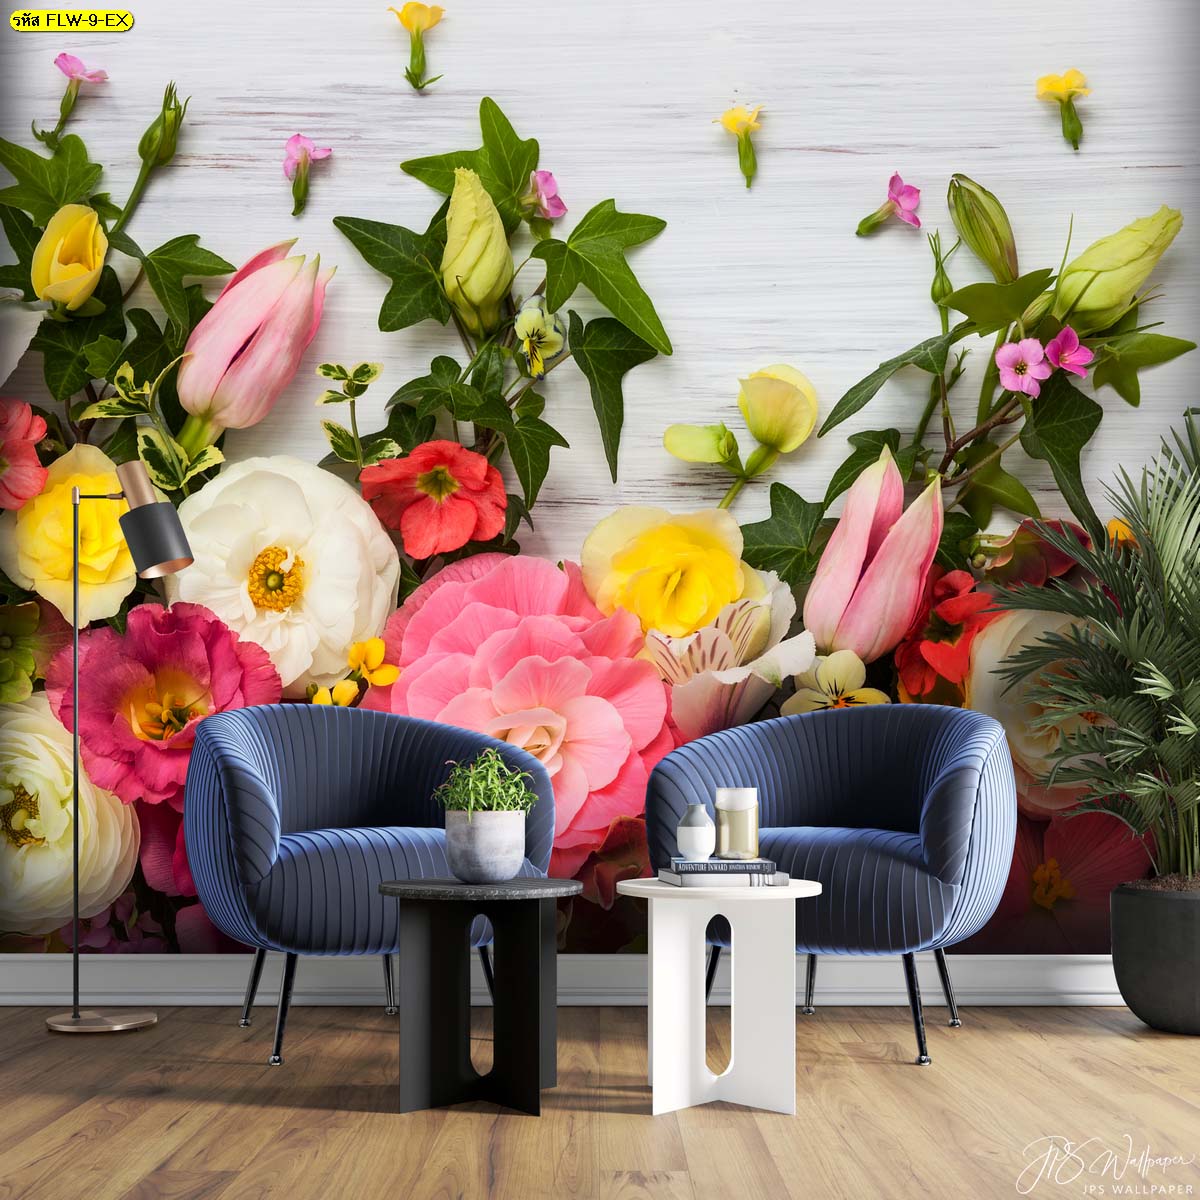 รูปภาพสั่งทำติดผนังภาพถ่ายดอกไม้ ดอกไม้สีสันสดใส ตกแต่งห้องนั่งเล่น